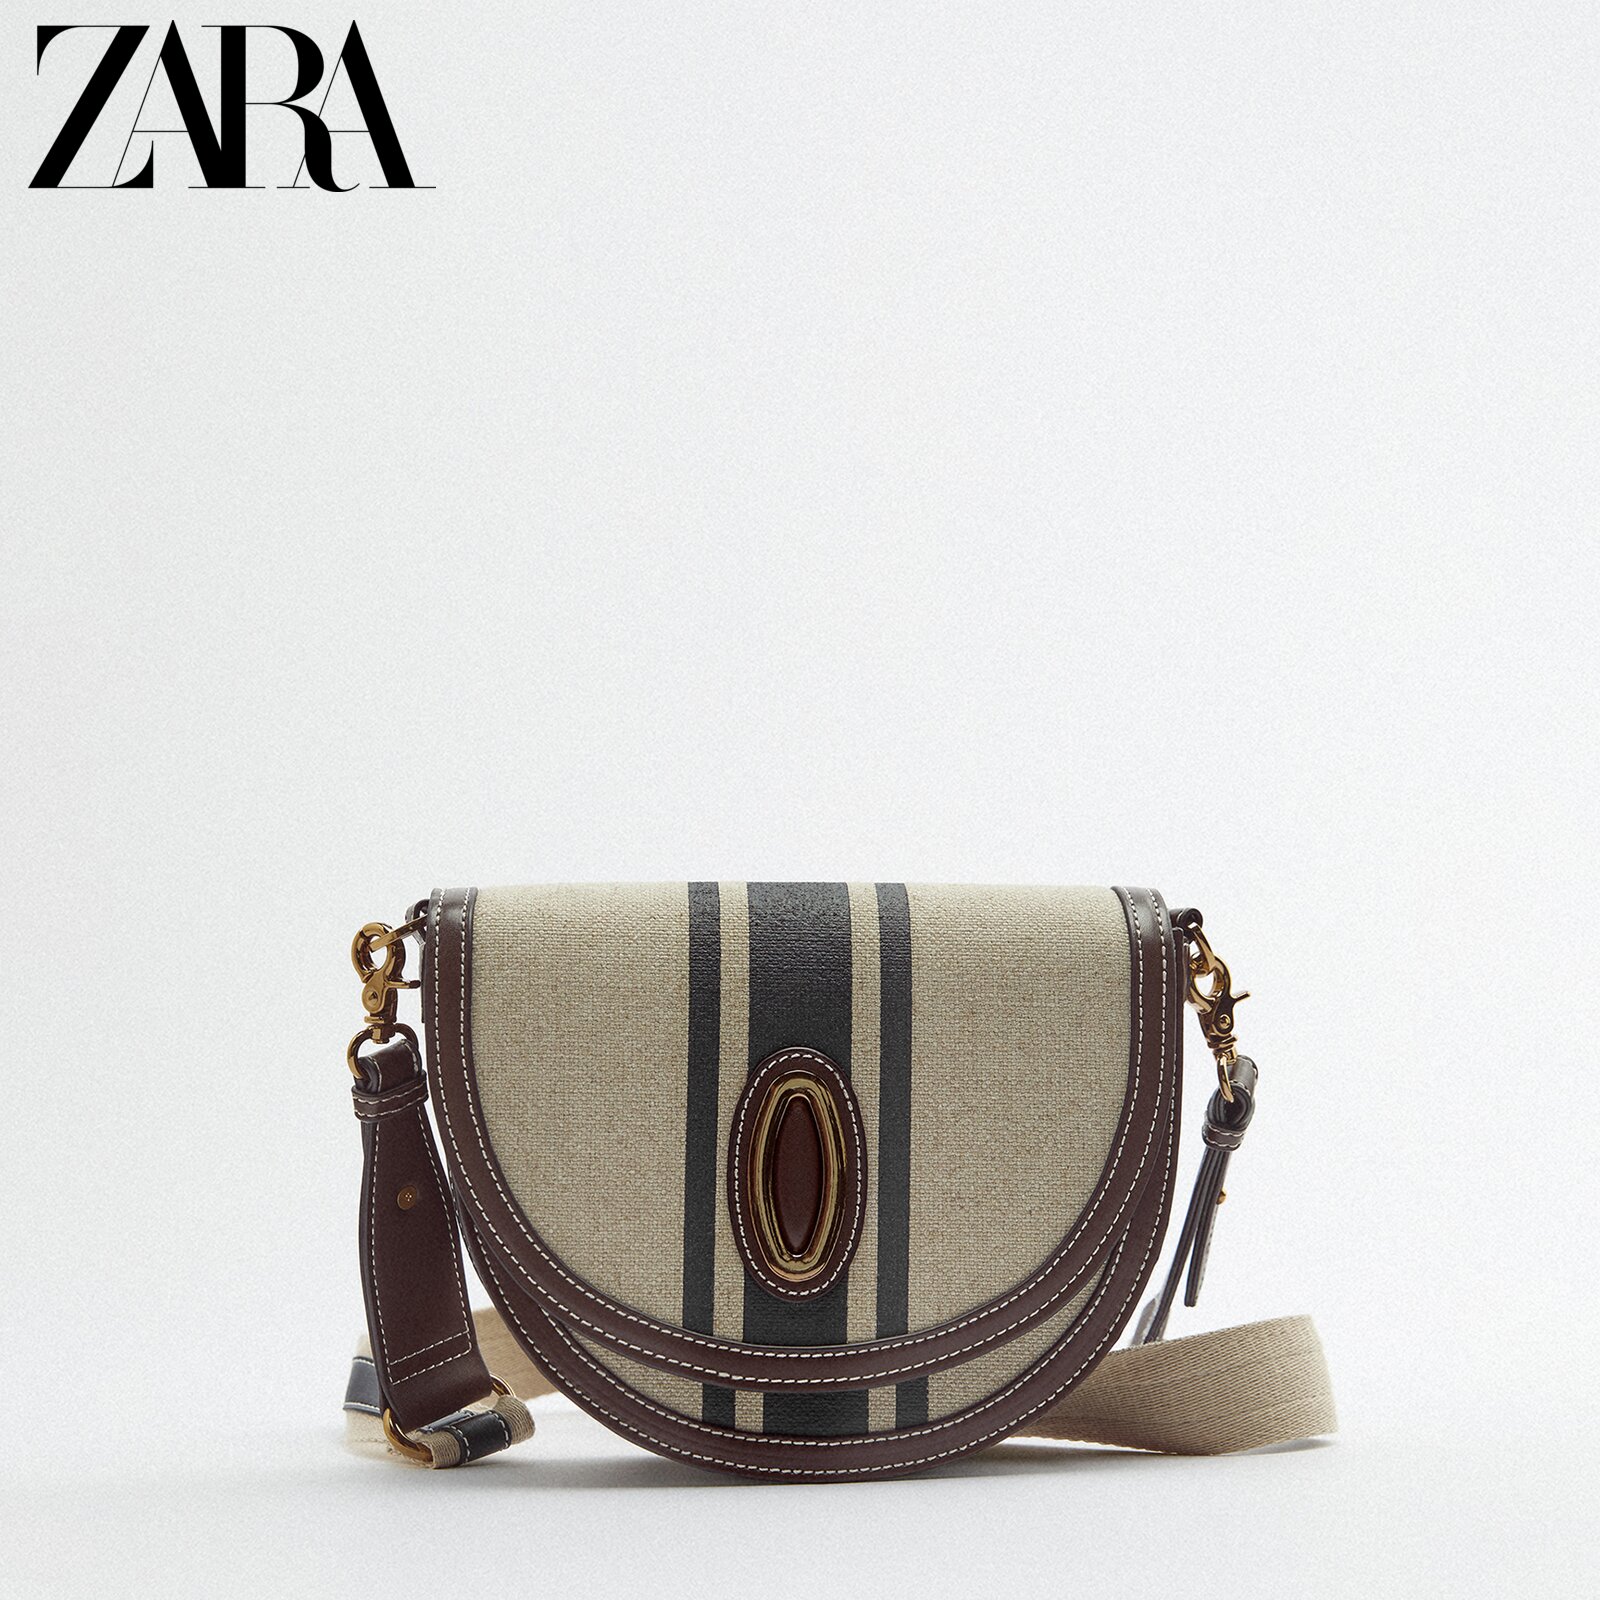 ZARA spring and summer new women's bag beige canvas classic shoulder gly shoulder saddle bag 6383910 102